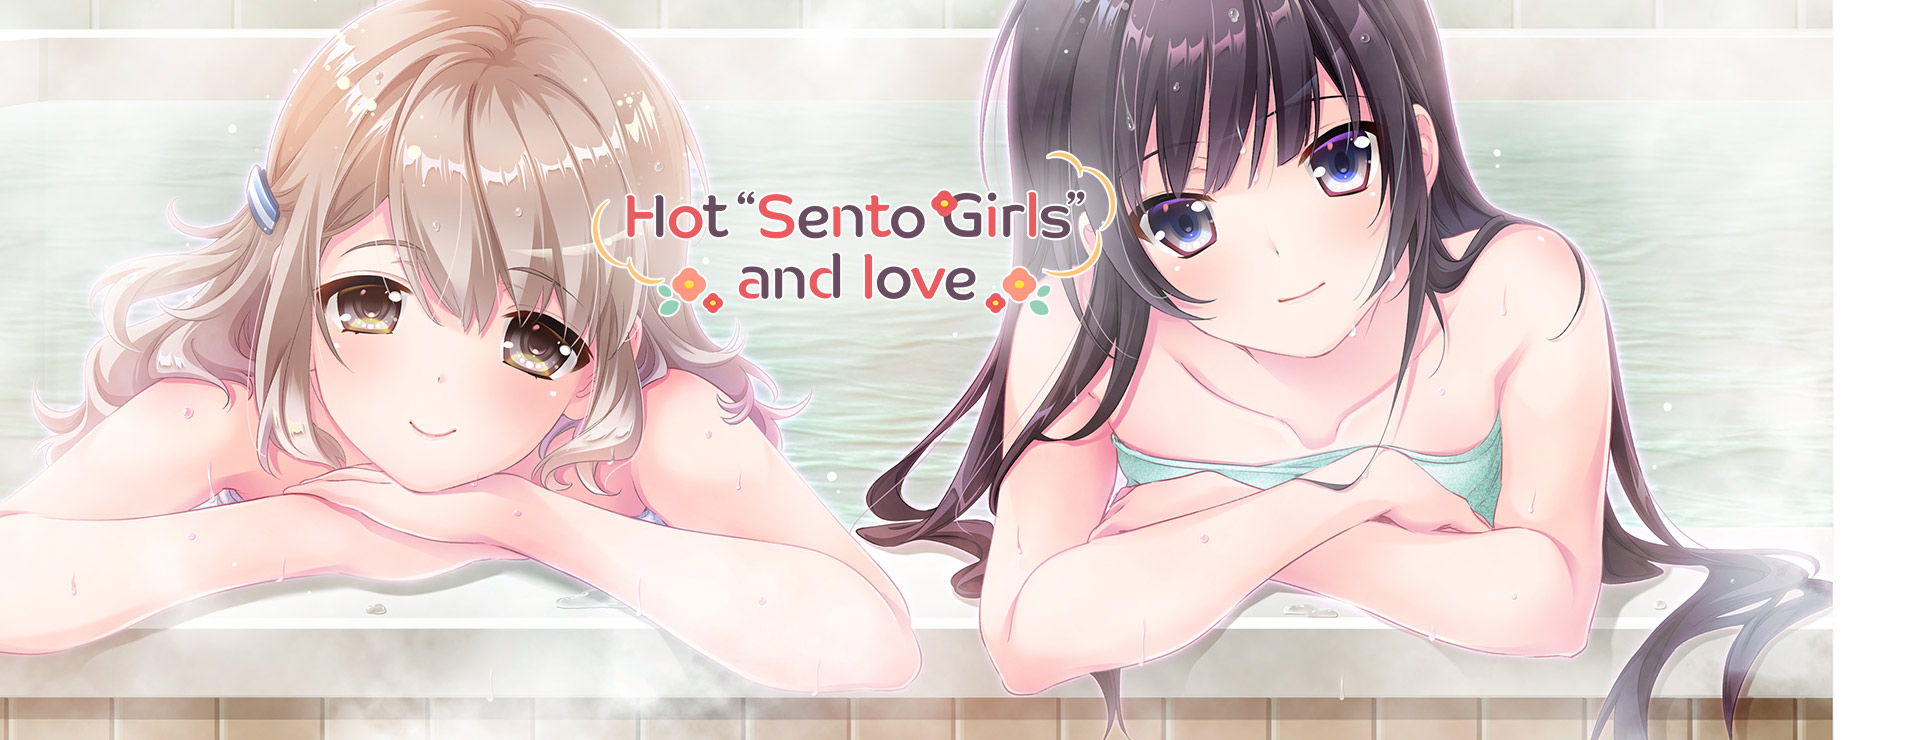 Hot "Sento Girls" and Love - Visual Novel Game